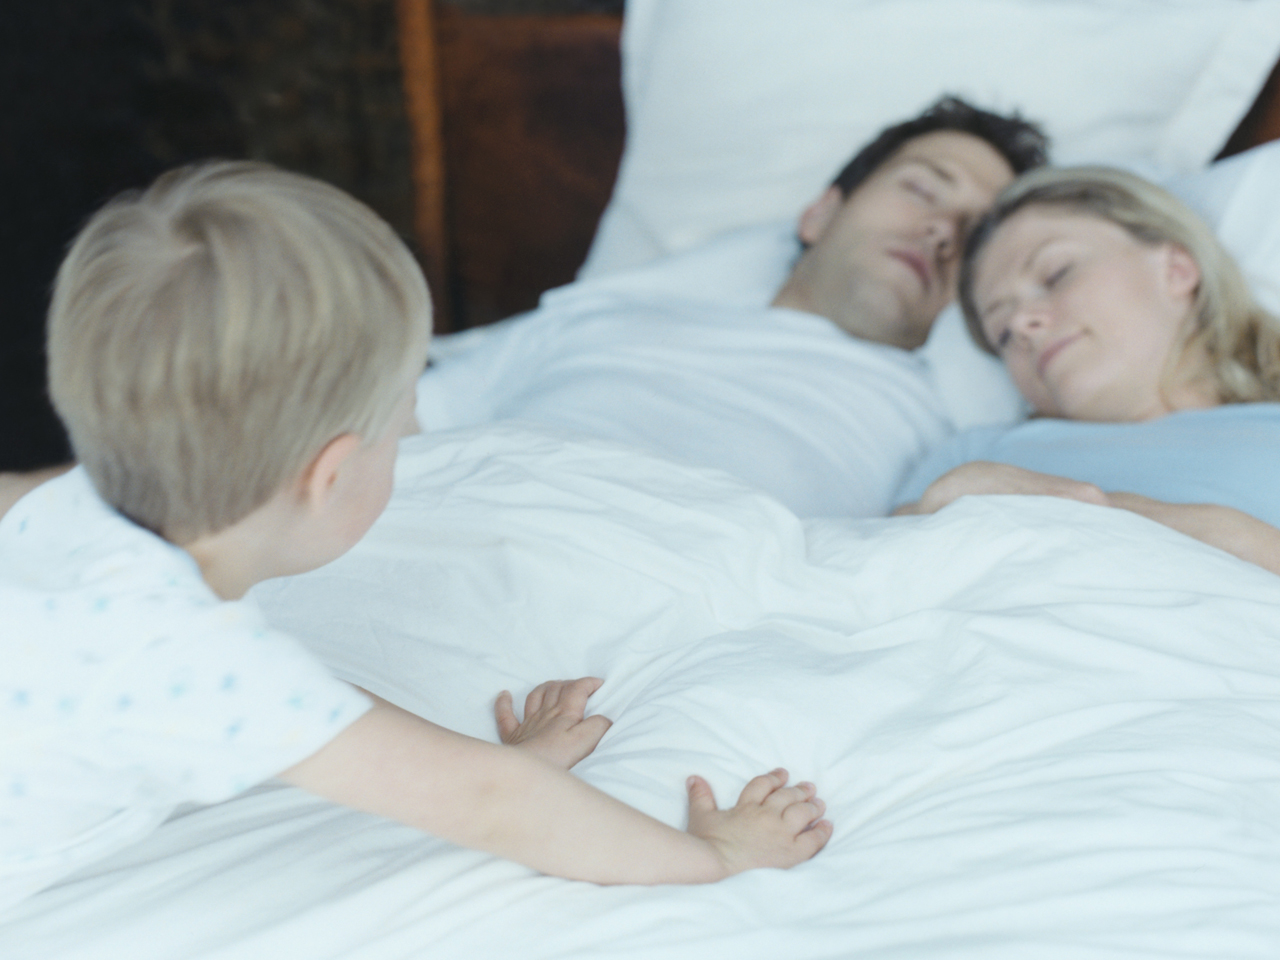 Мачеха играет в постели в любовь с приёмными сыном и дочерью